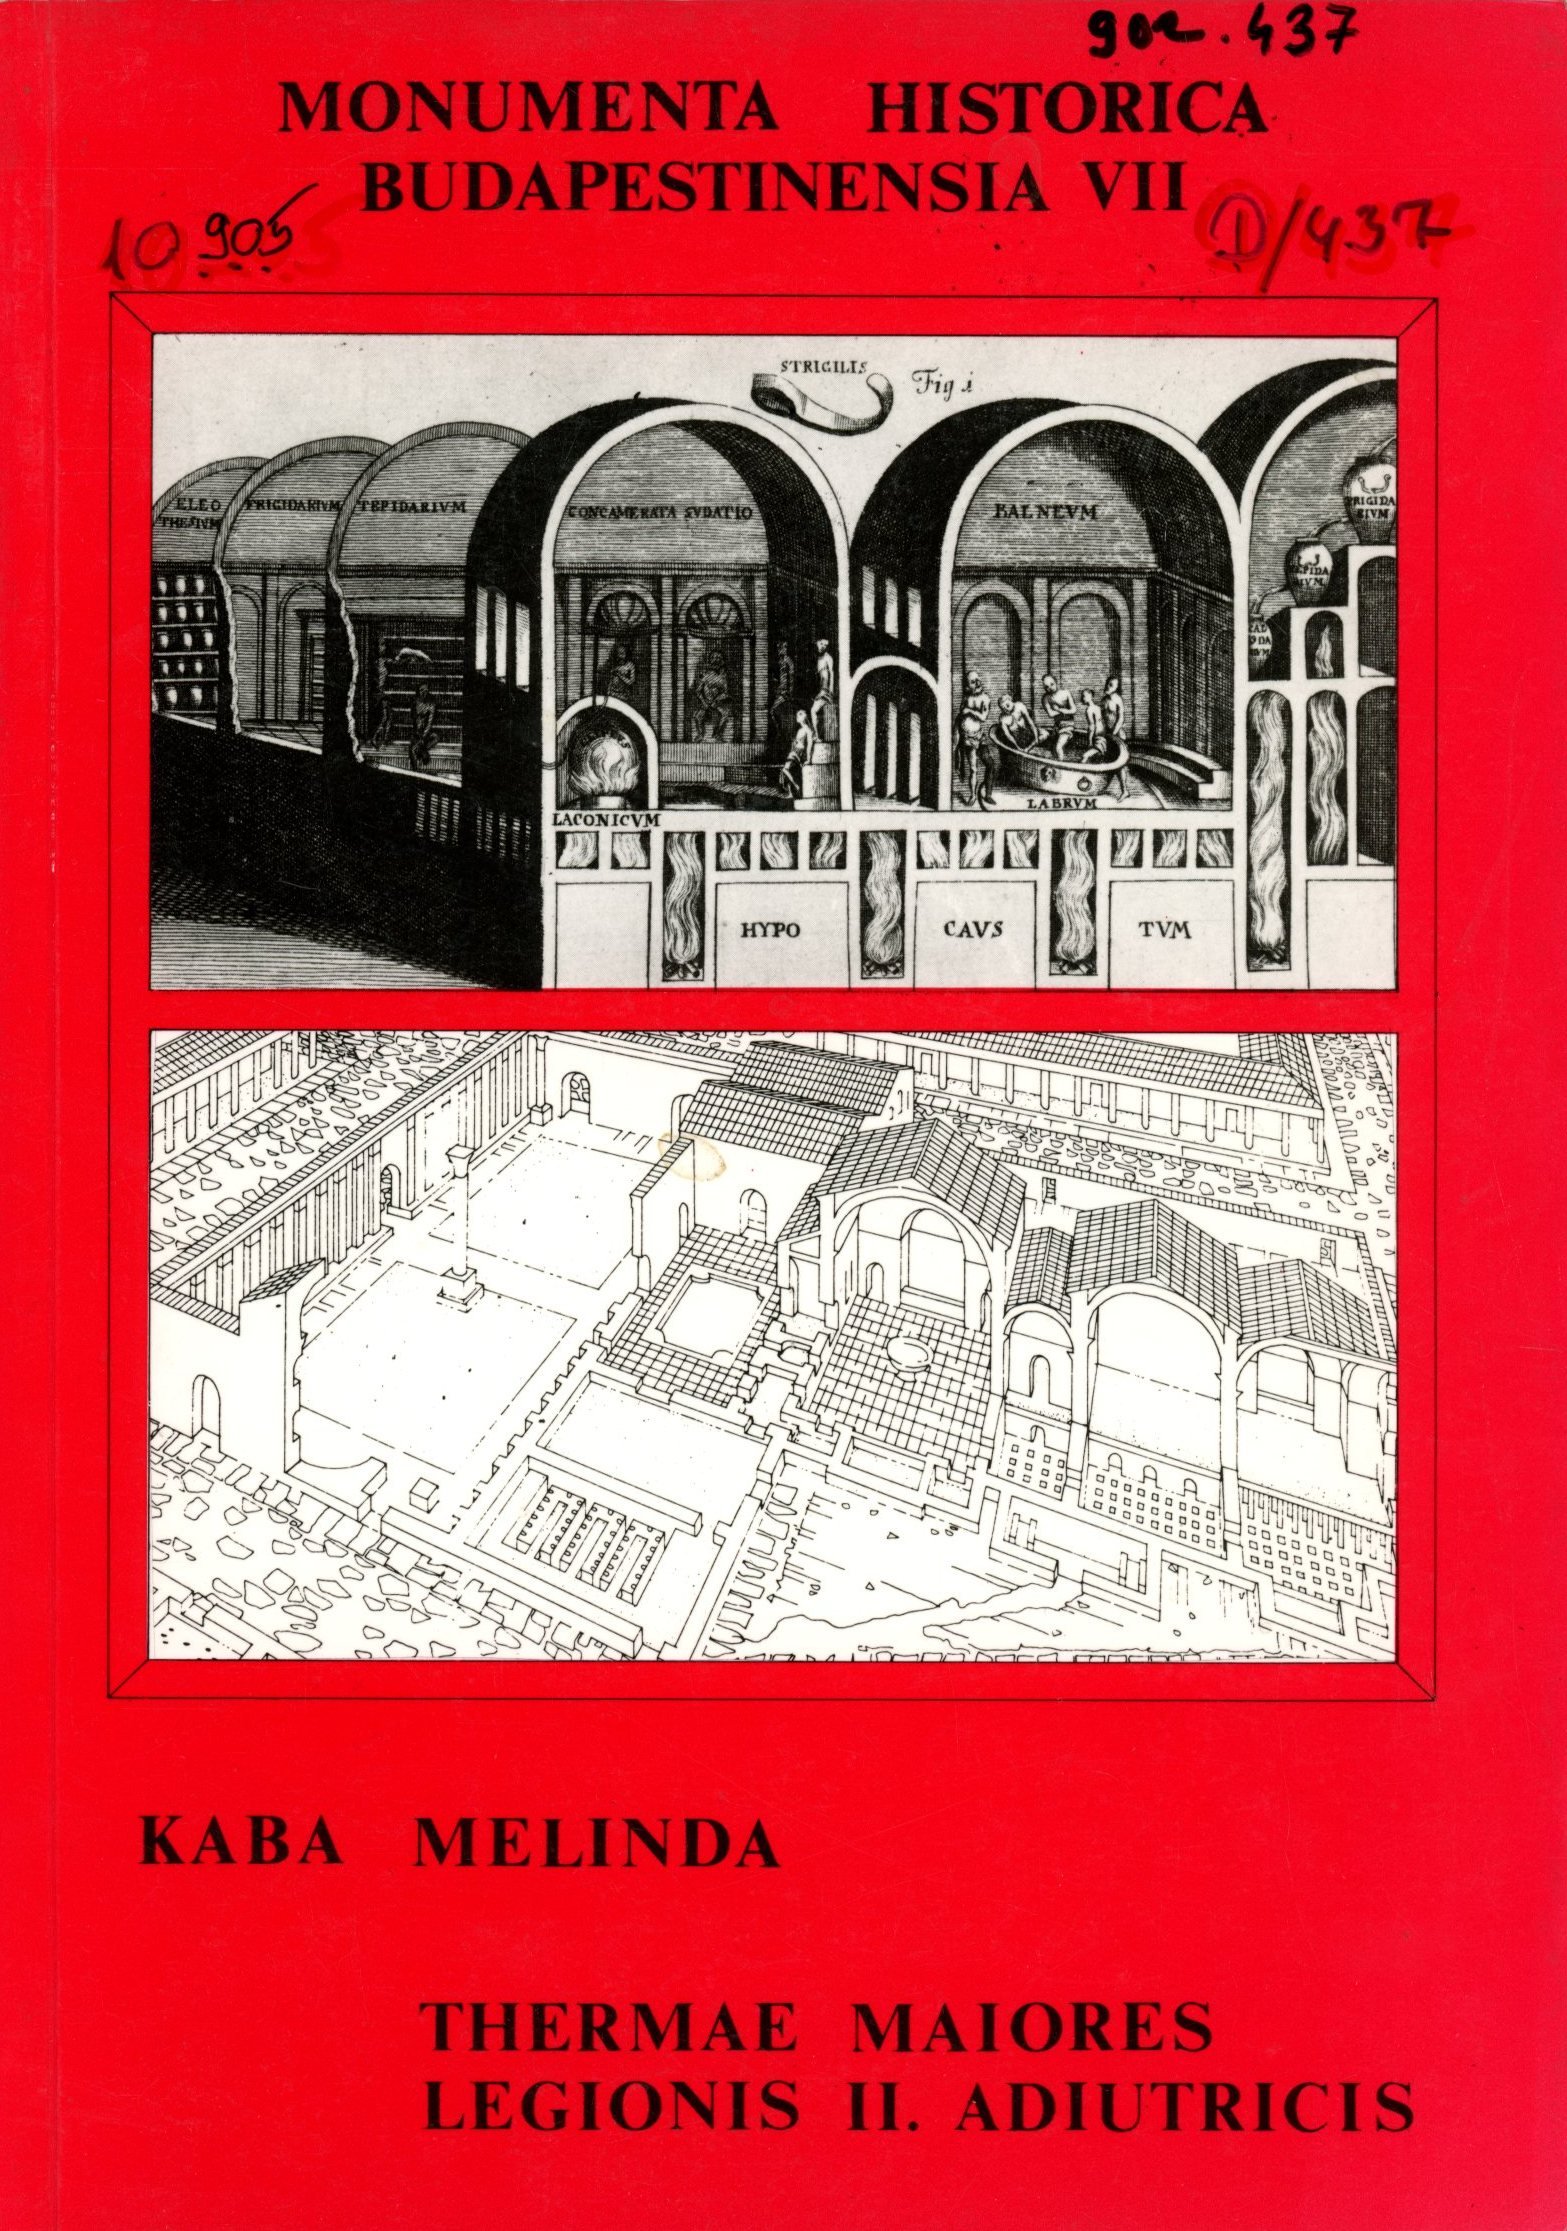 Kaba Melinda (Erkel Ferenc Múzeum és Könyvtár, Gyula CC BY-NC-SA)